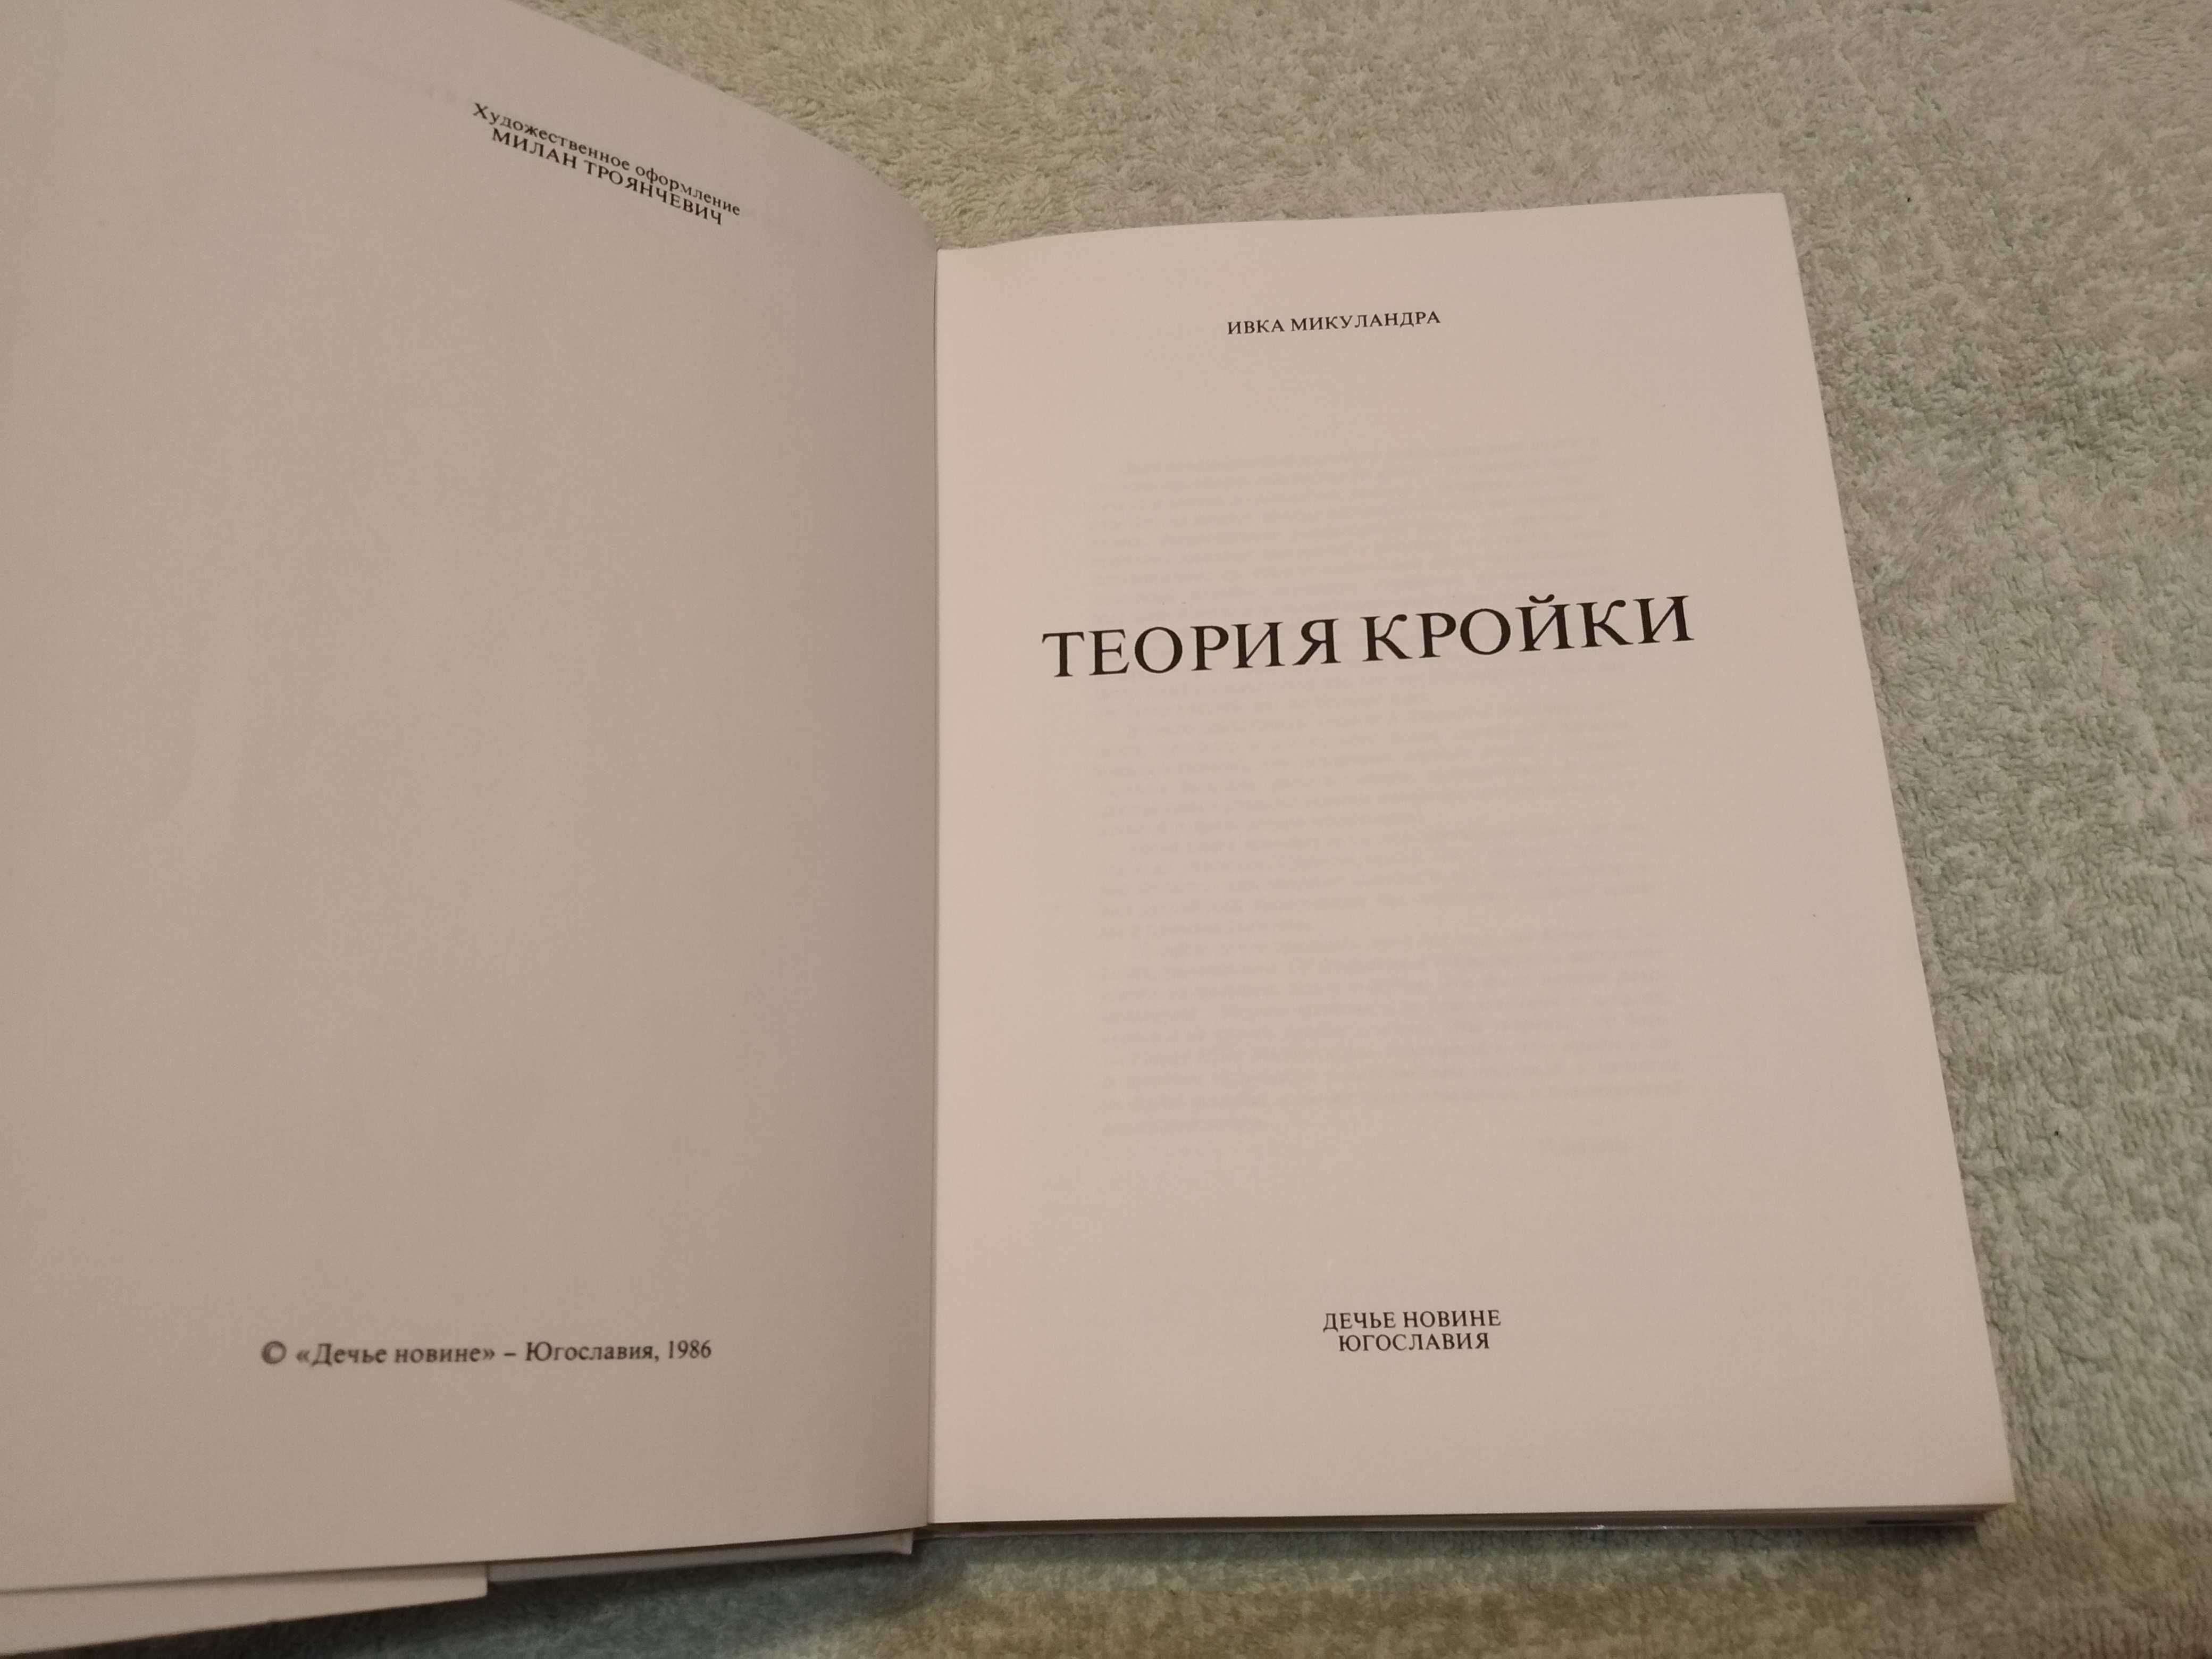 Книга Теория кройки, Ивка Микуландра